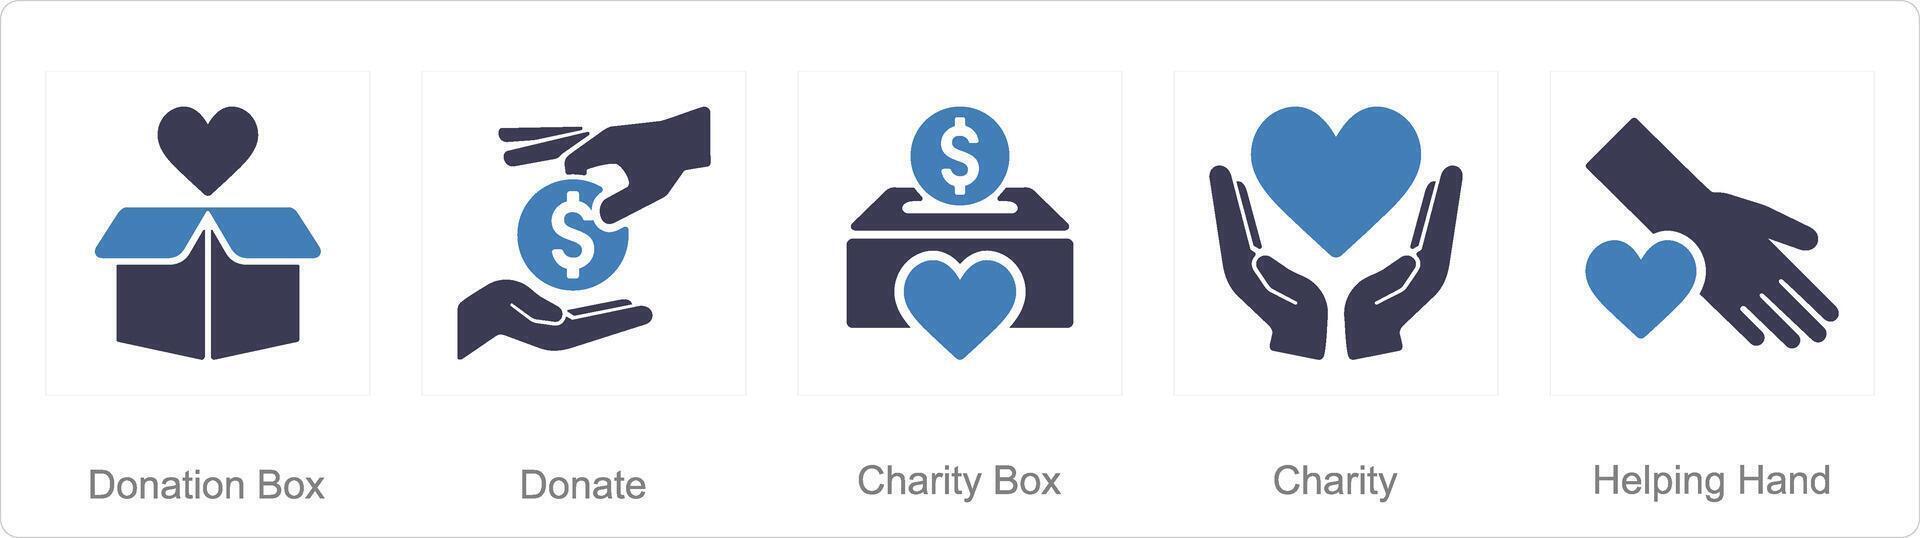 een reeks van 5 liefdadigheid en bijdrage pictogrammen net zo bijdrage doos, doneren, liefdadigheid doos vector